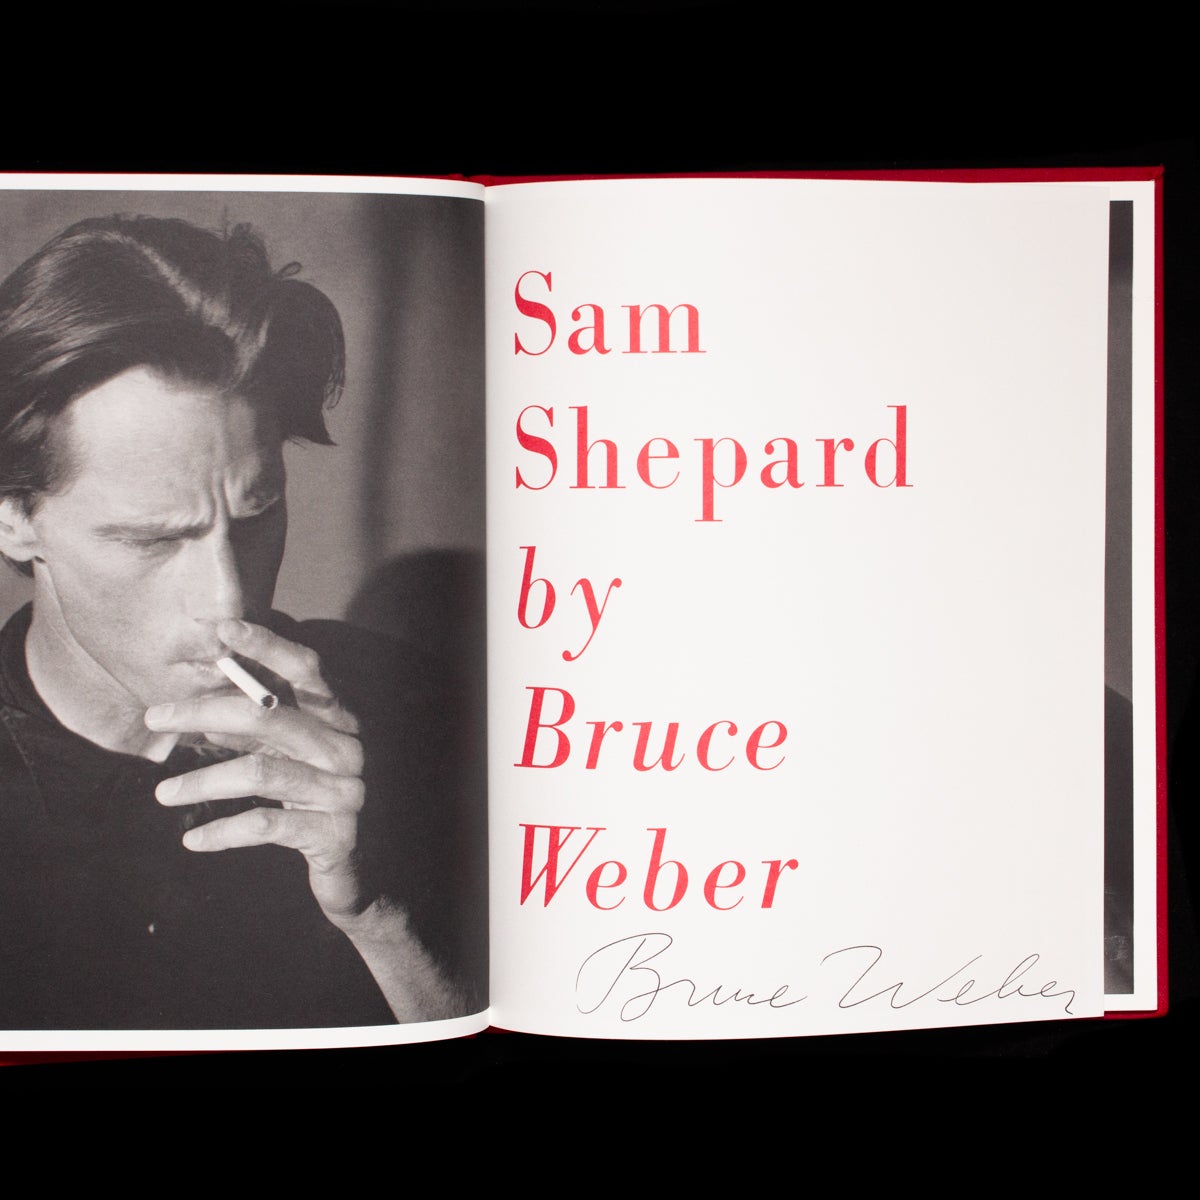 Sam Shepard by Sam Shepard, Bruce Weber on Left Bank Books, LLC